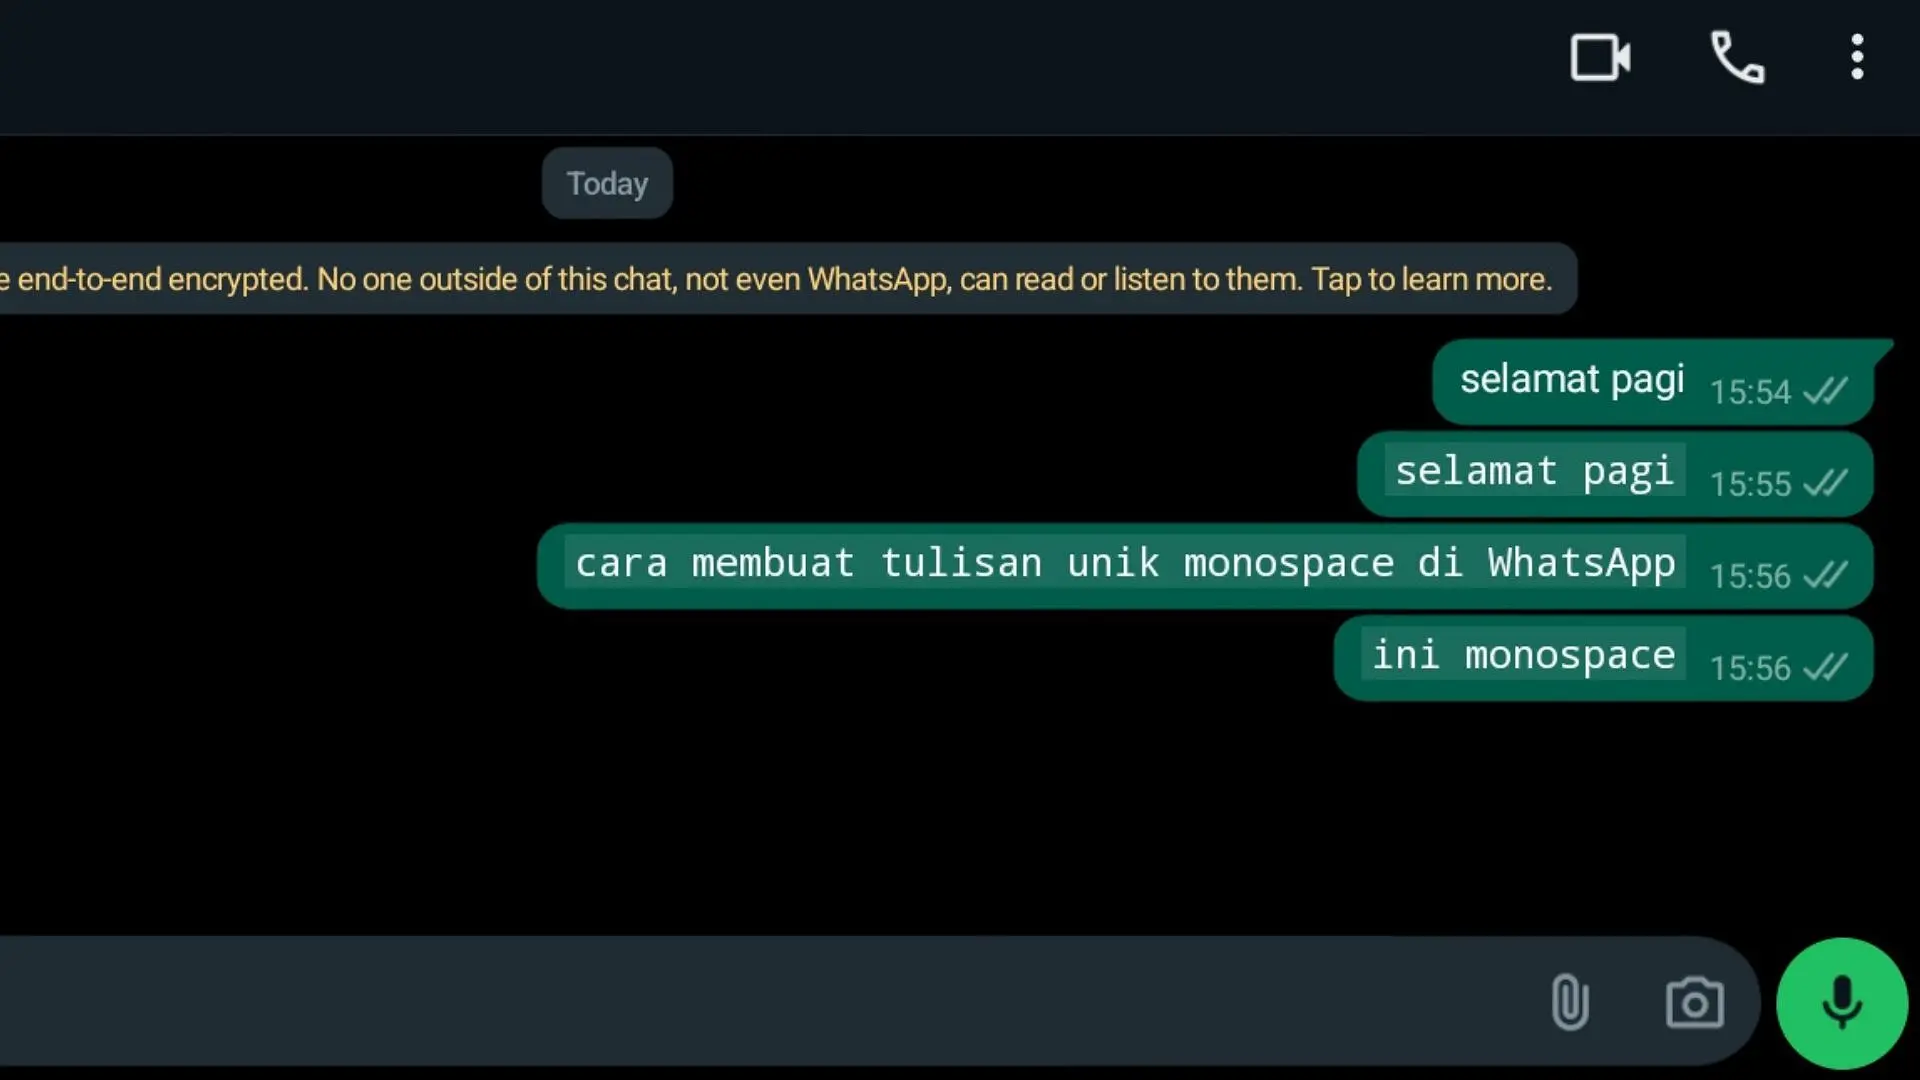 cara membuat tulisan monospace di whatsapp